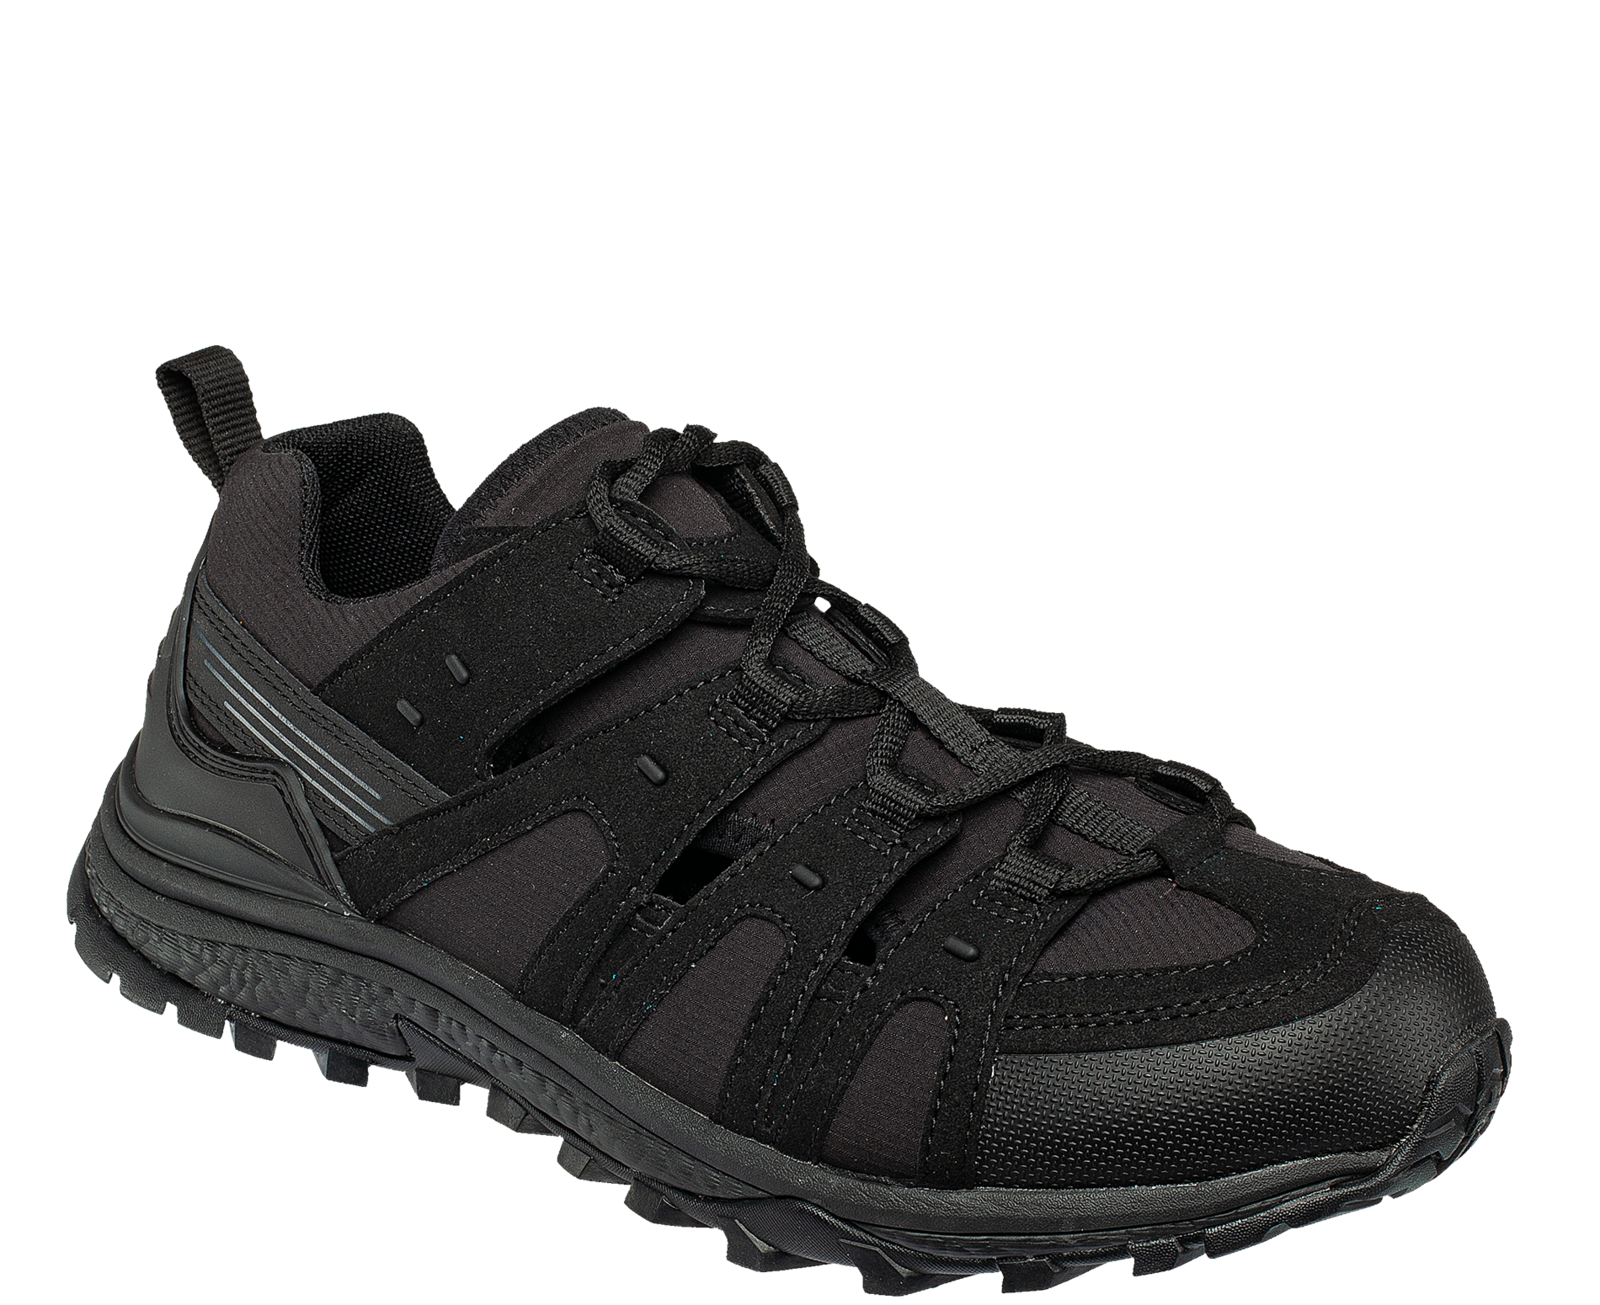 Pracovné sandále Bennon Amigo O1 čierne - veľkosť: 42, farba: čierna